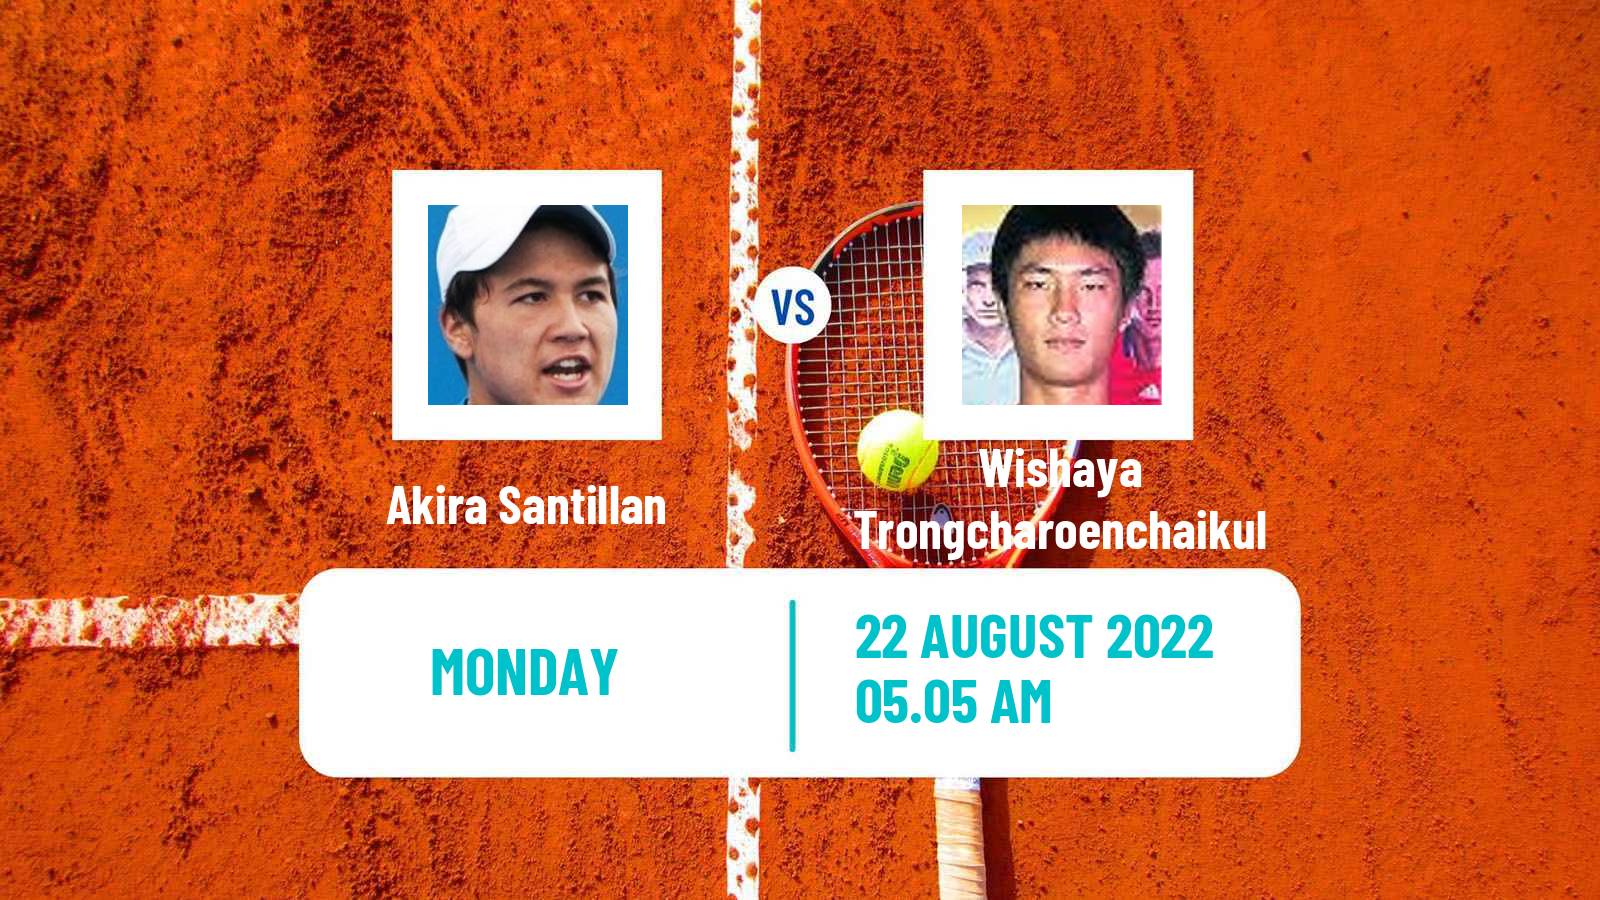 Tennis ATP Challenger Akira Santillan - Wishaya Trongcharoenchaikul